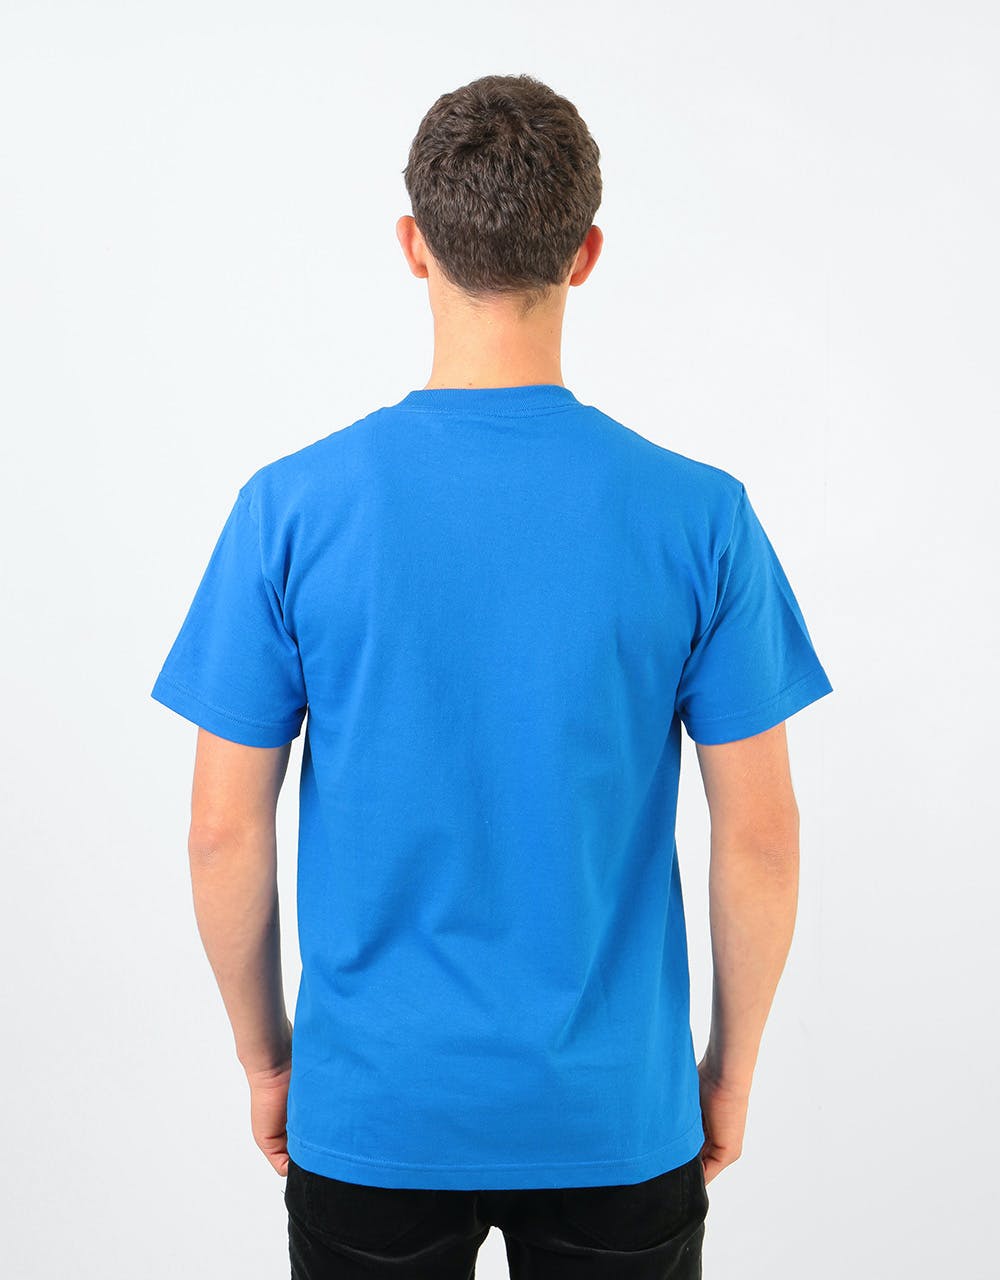 Becky Factory Fashion Killer Shark T-Shirt - Blue